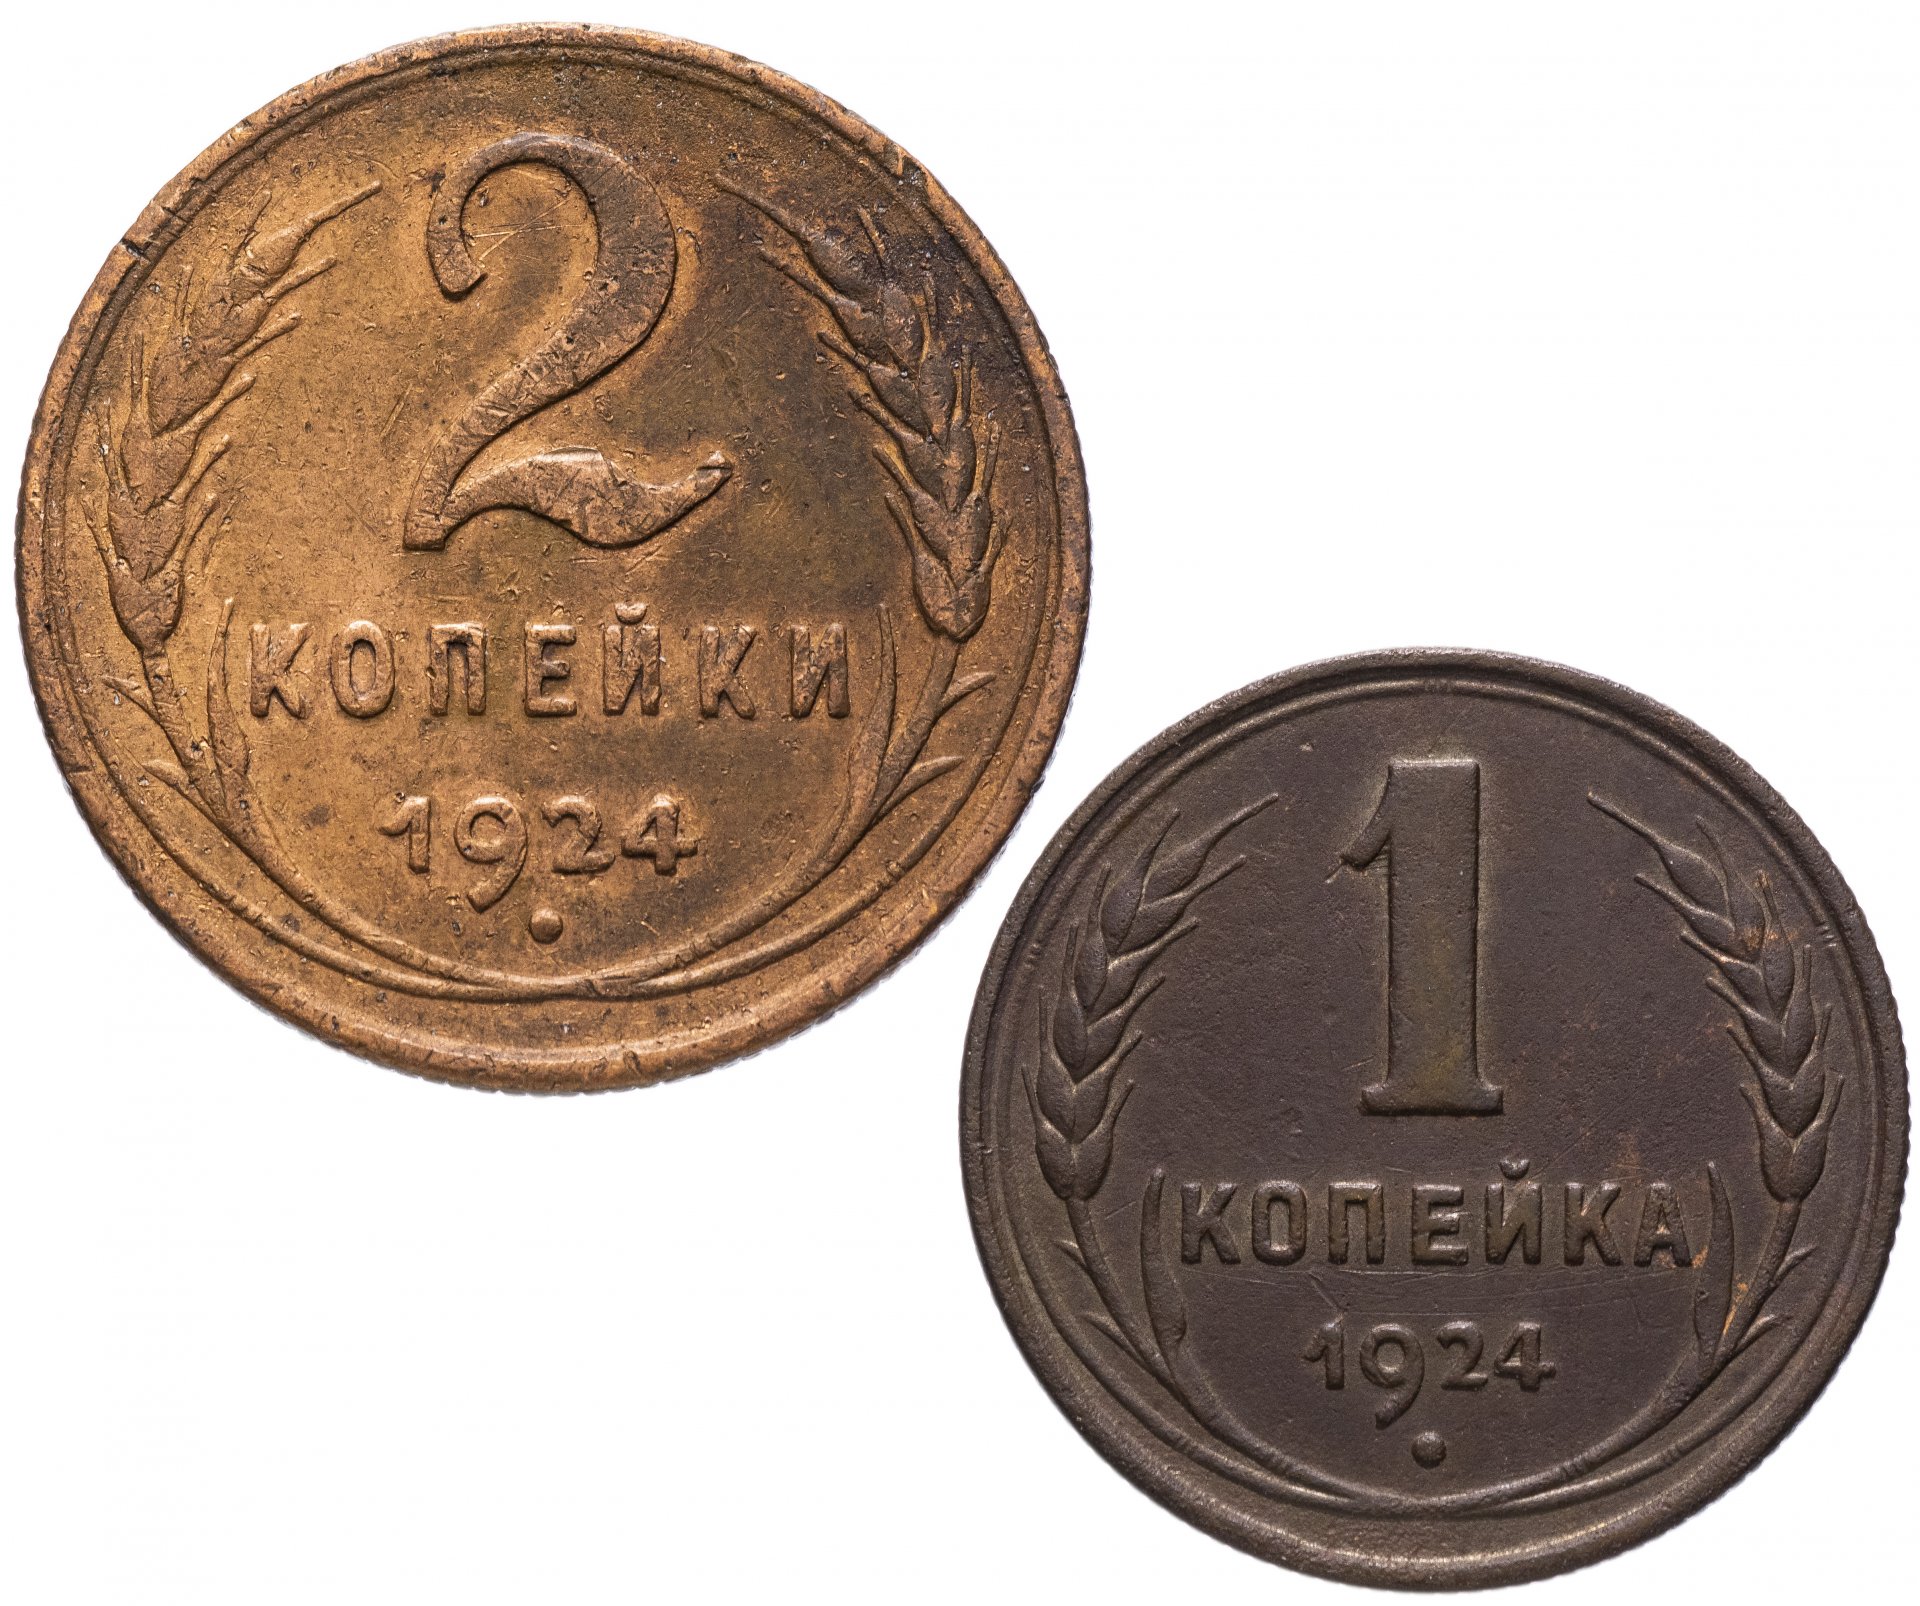 10 копеек 1924. 5 Копеек 1924. Монета 2 копейки 1924. 2 Копейки 1924 года. 1 Копейка 1924 года.